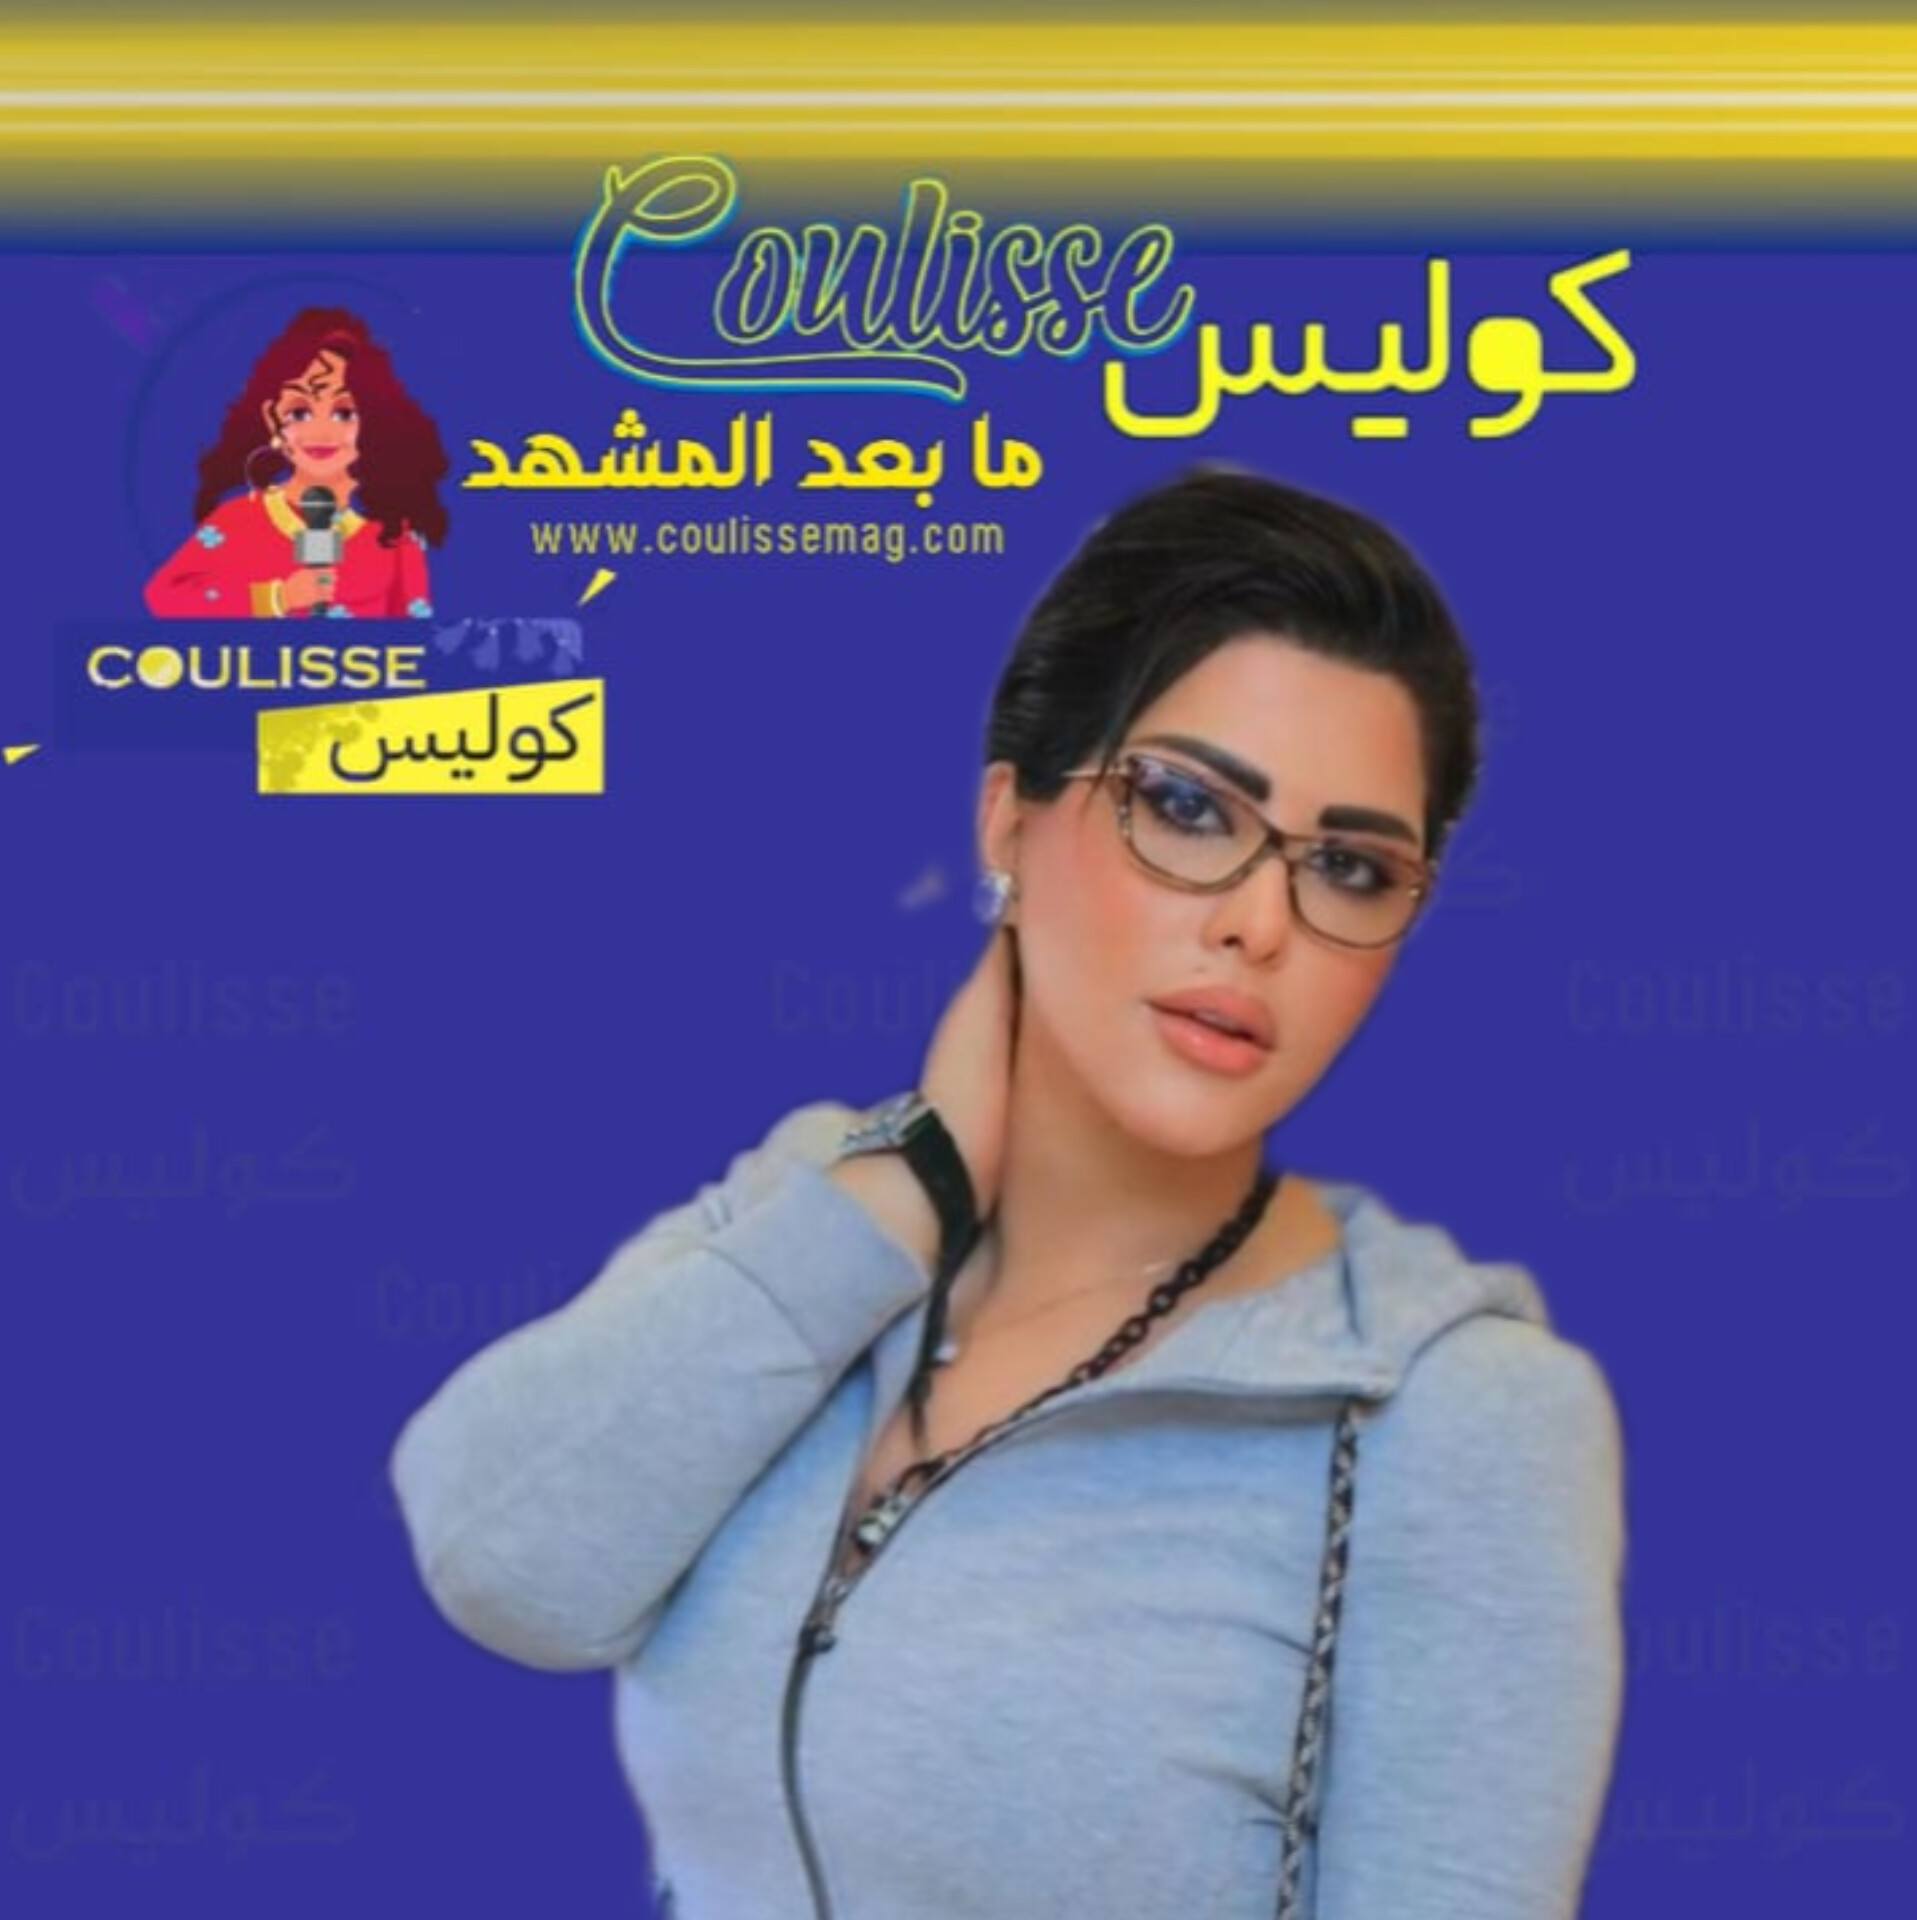 شمس الكويتية من يكون زوجها الجديد؟!